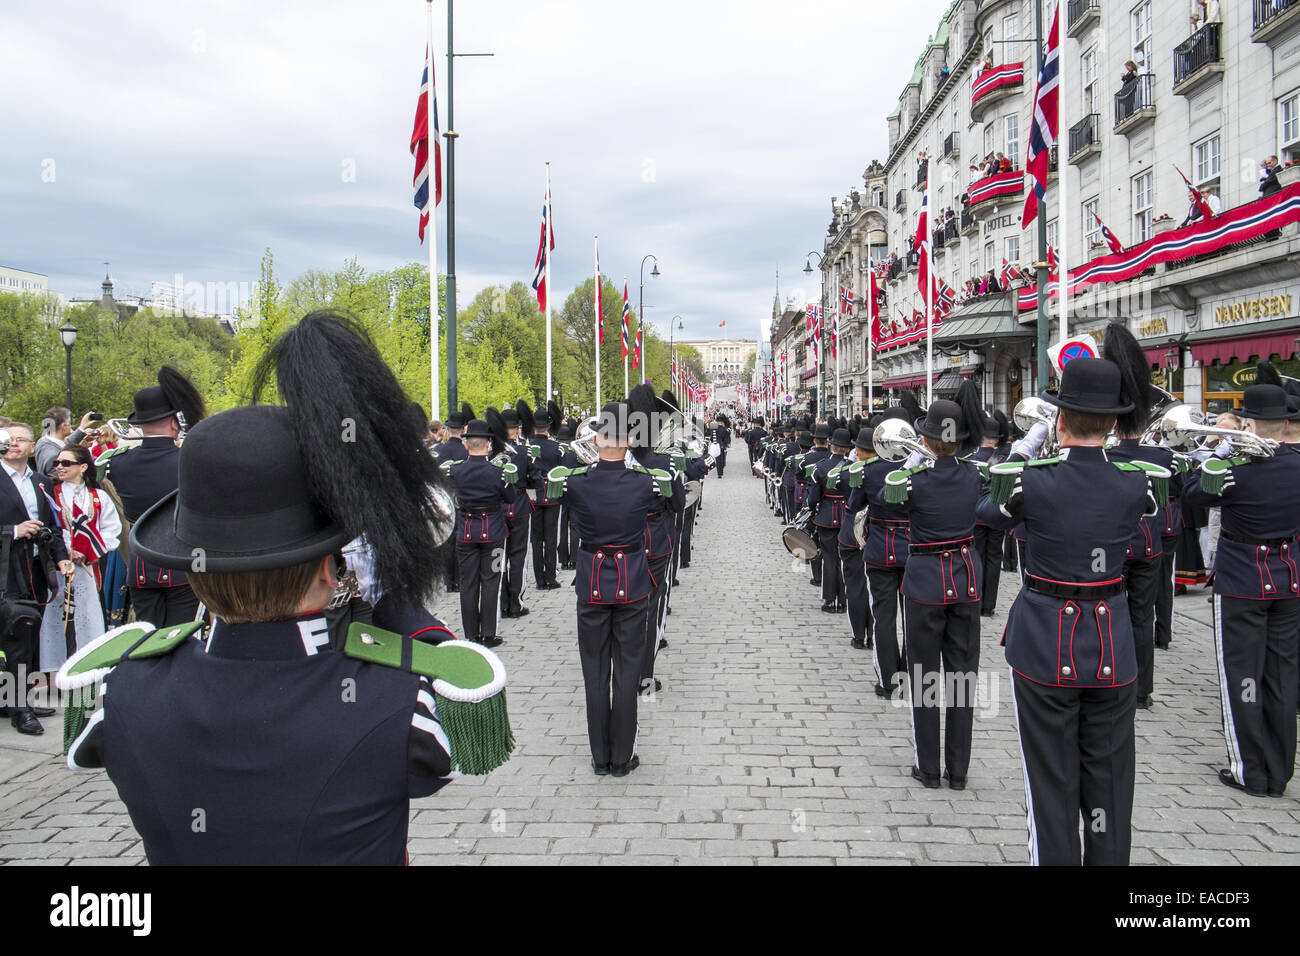 Norway Oslo 17 may royal guards band on parade Stock Photo